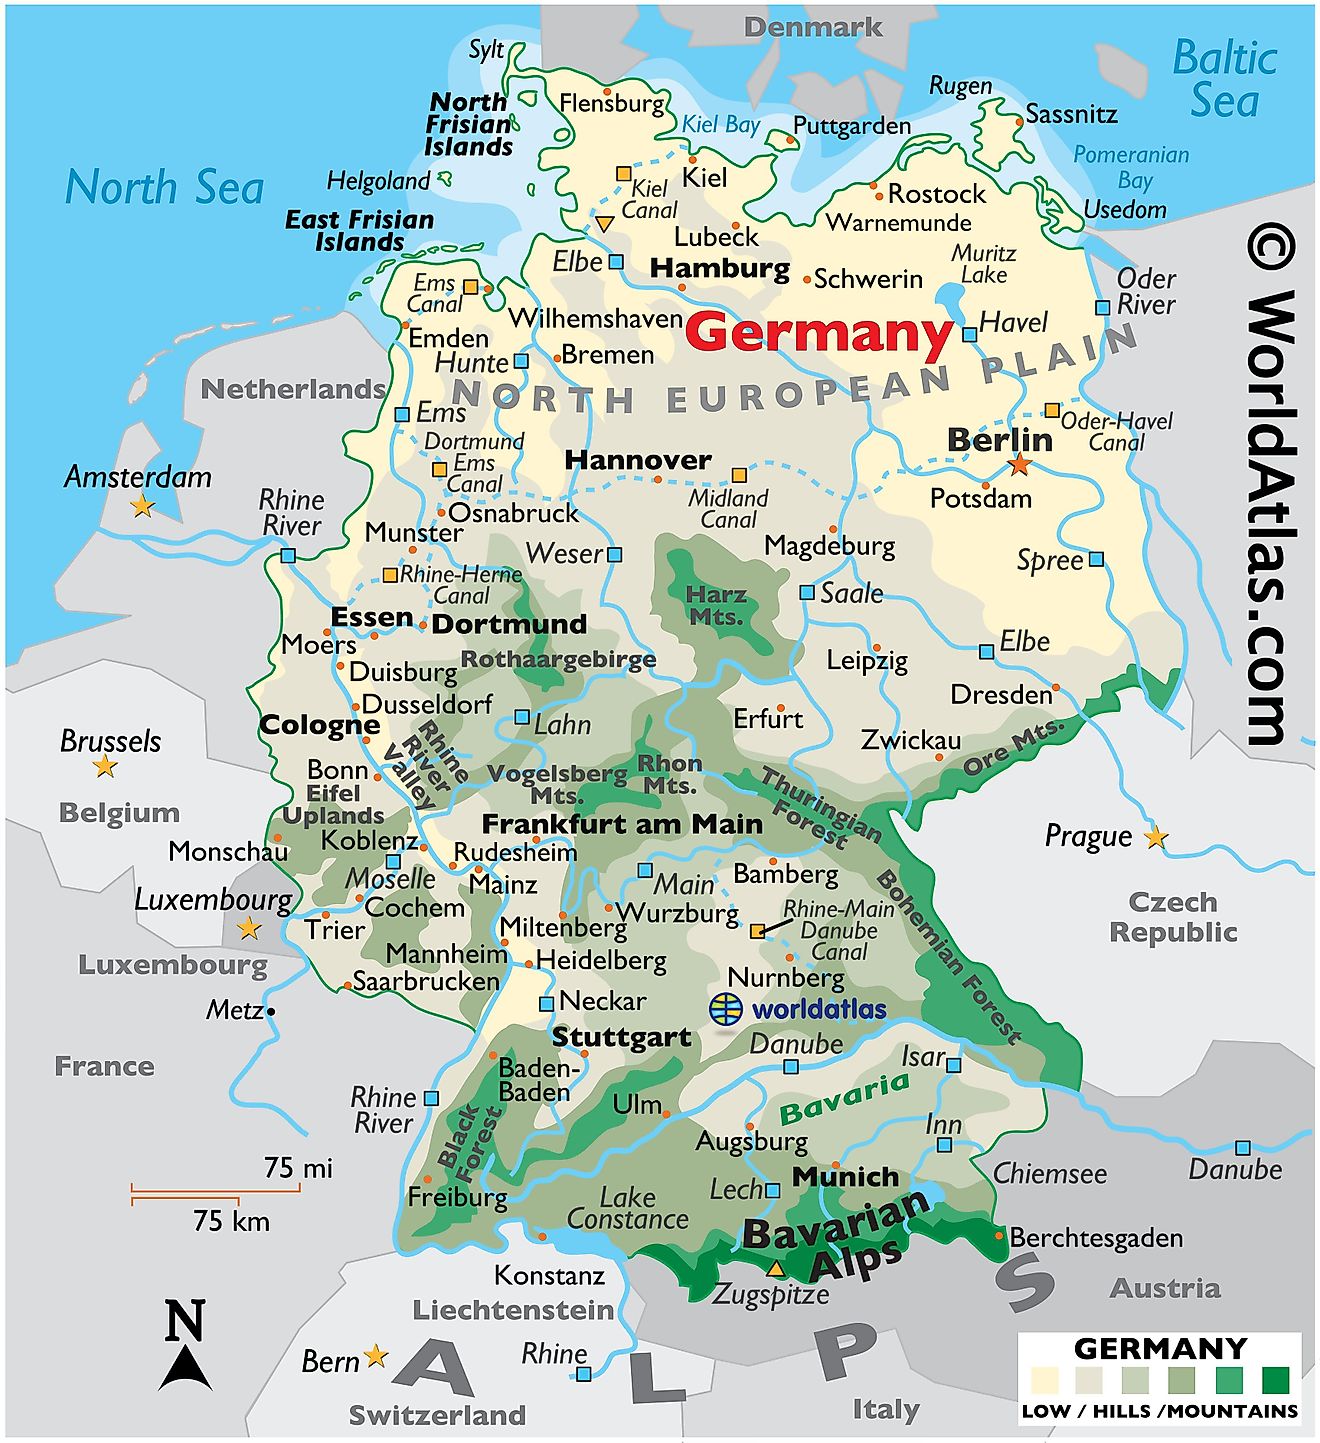 Mapa físico de Alemania que muestra el terreno, las cadenas montañosas, los puntos extremos, los principales ríos, las ciudades importantes, las fronteras internacionales, etc.